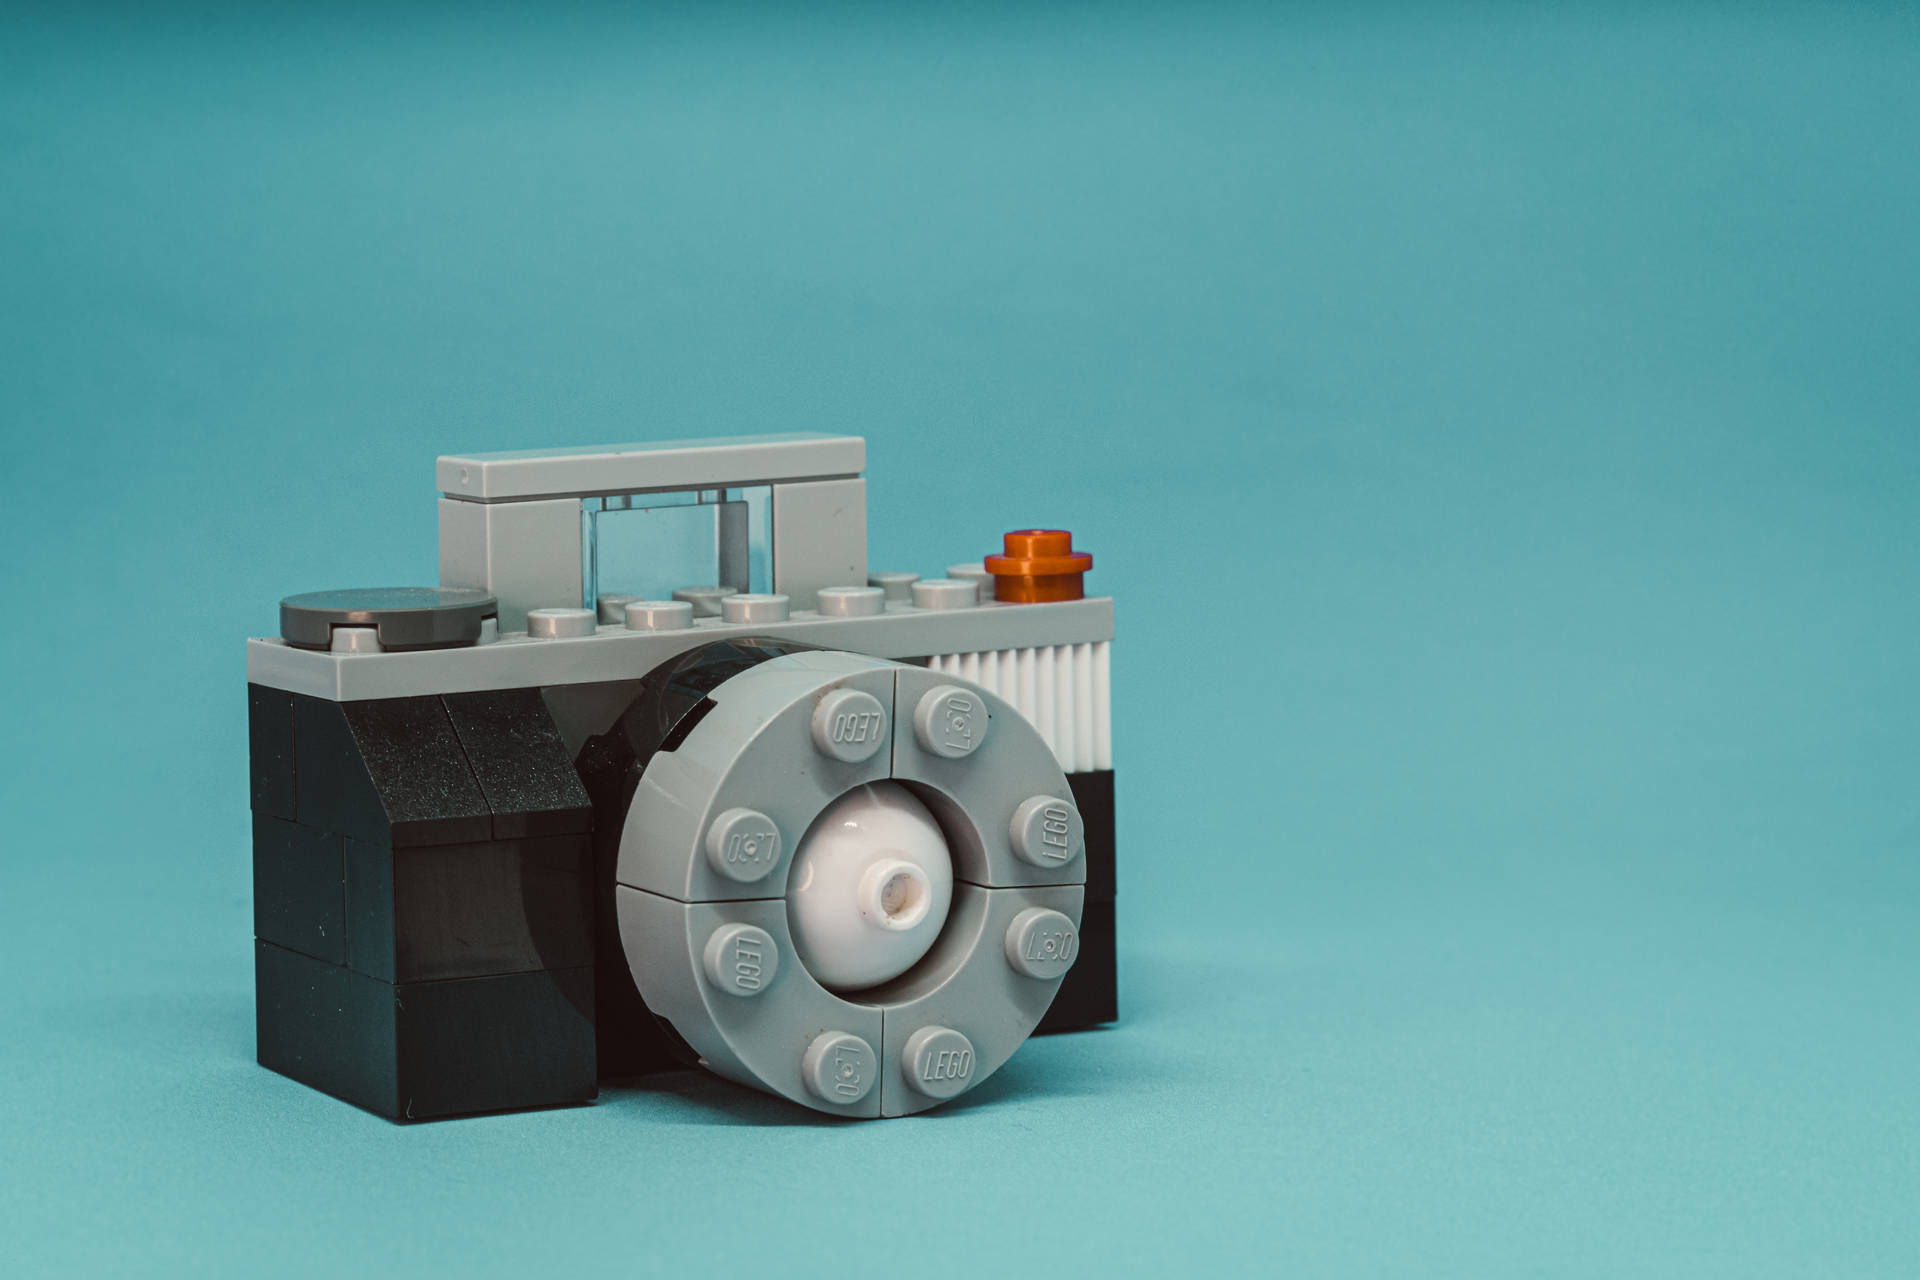 Lego Camera Modelon Blue Background SVG